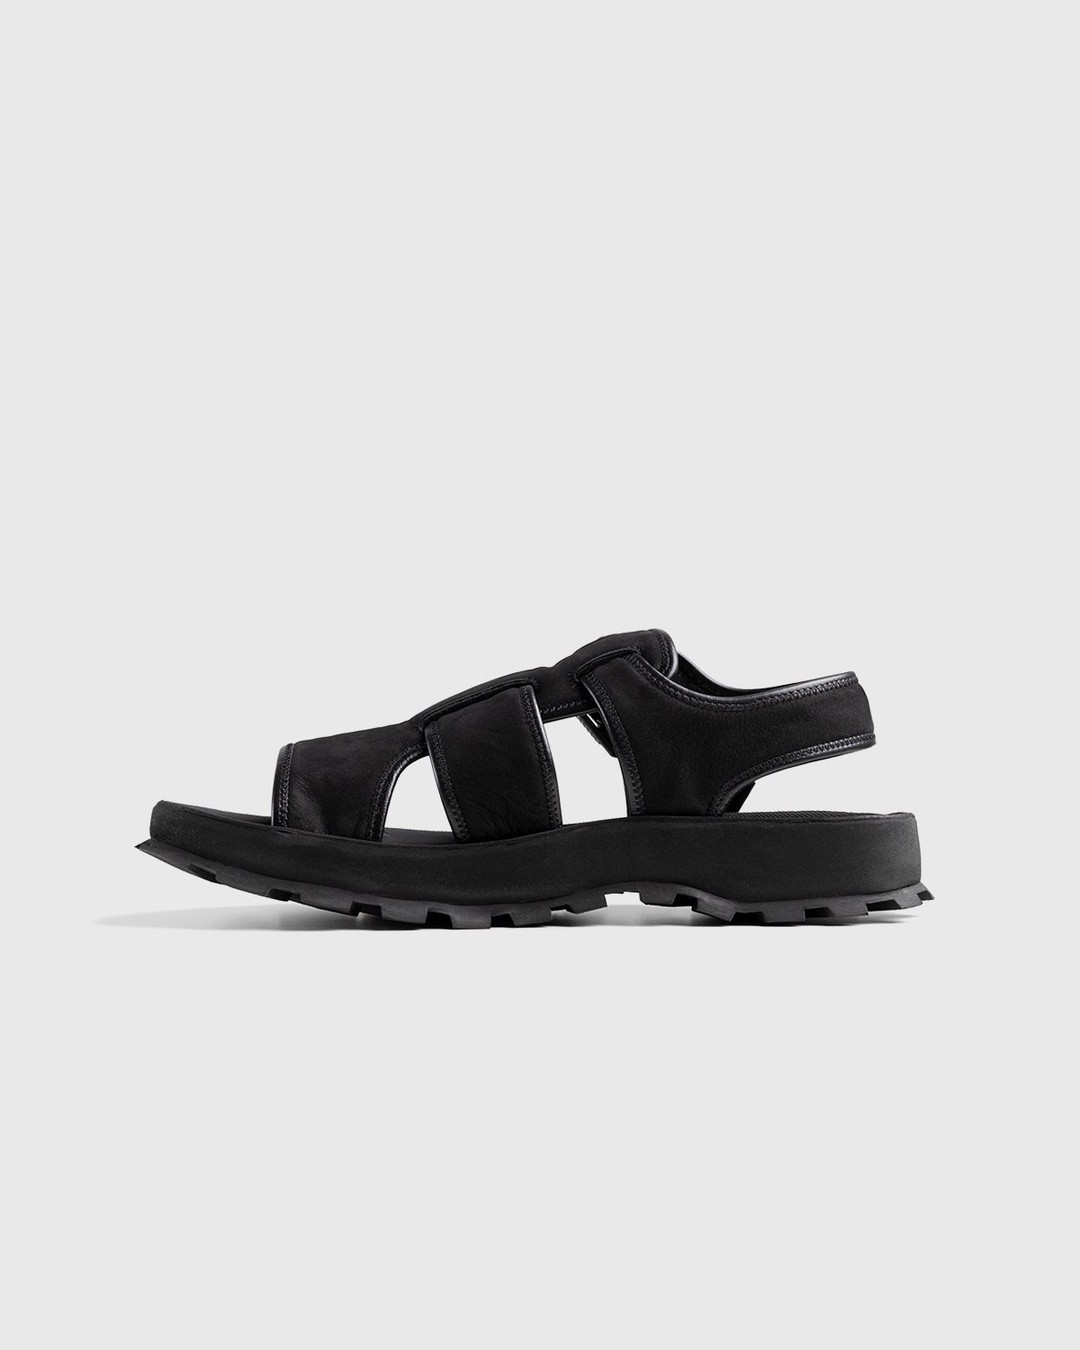 Jil Sander – Calfskin Leather Sandal Black - Sandals - Black - Image 2